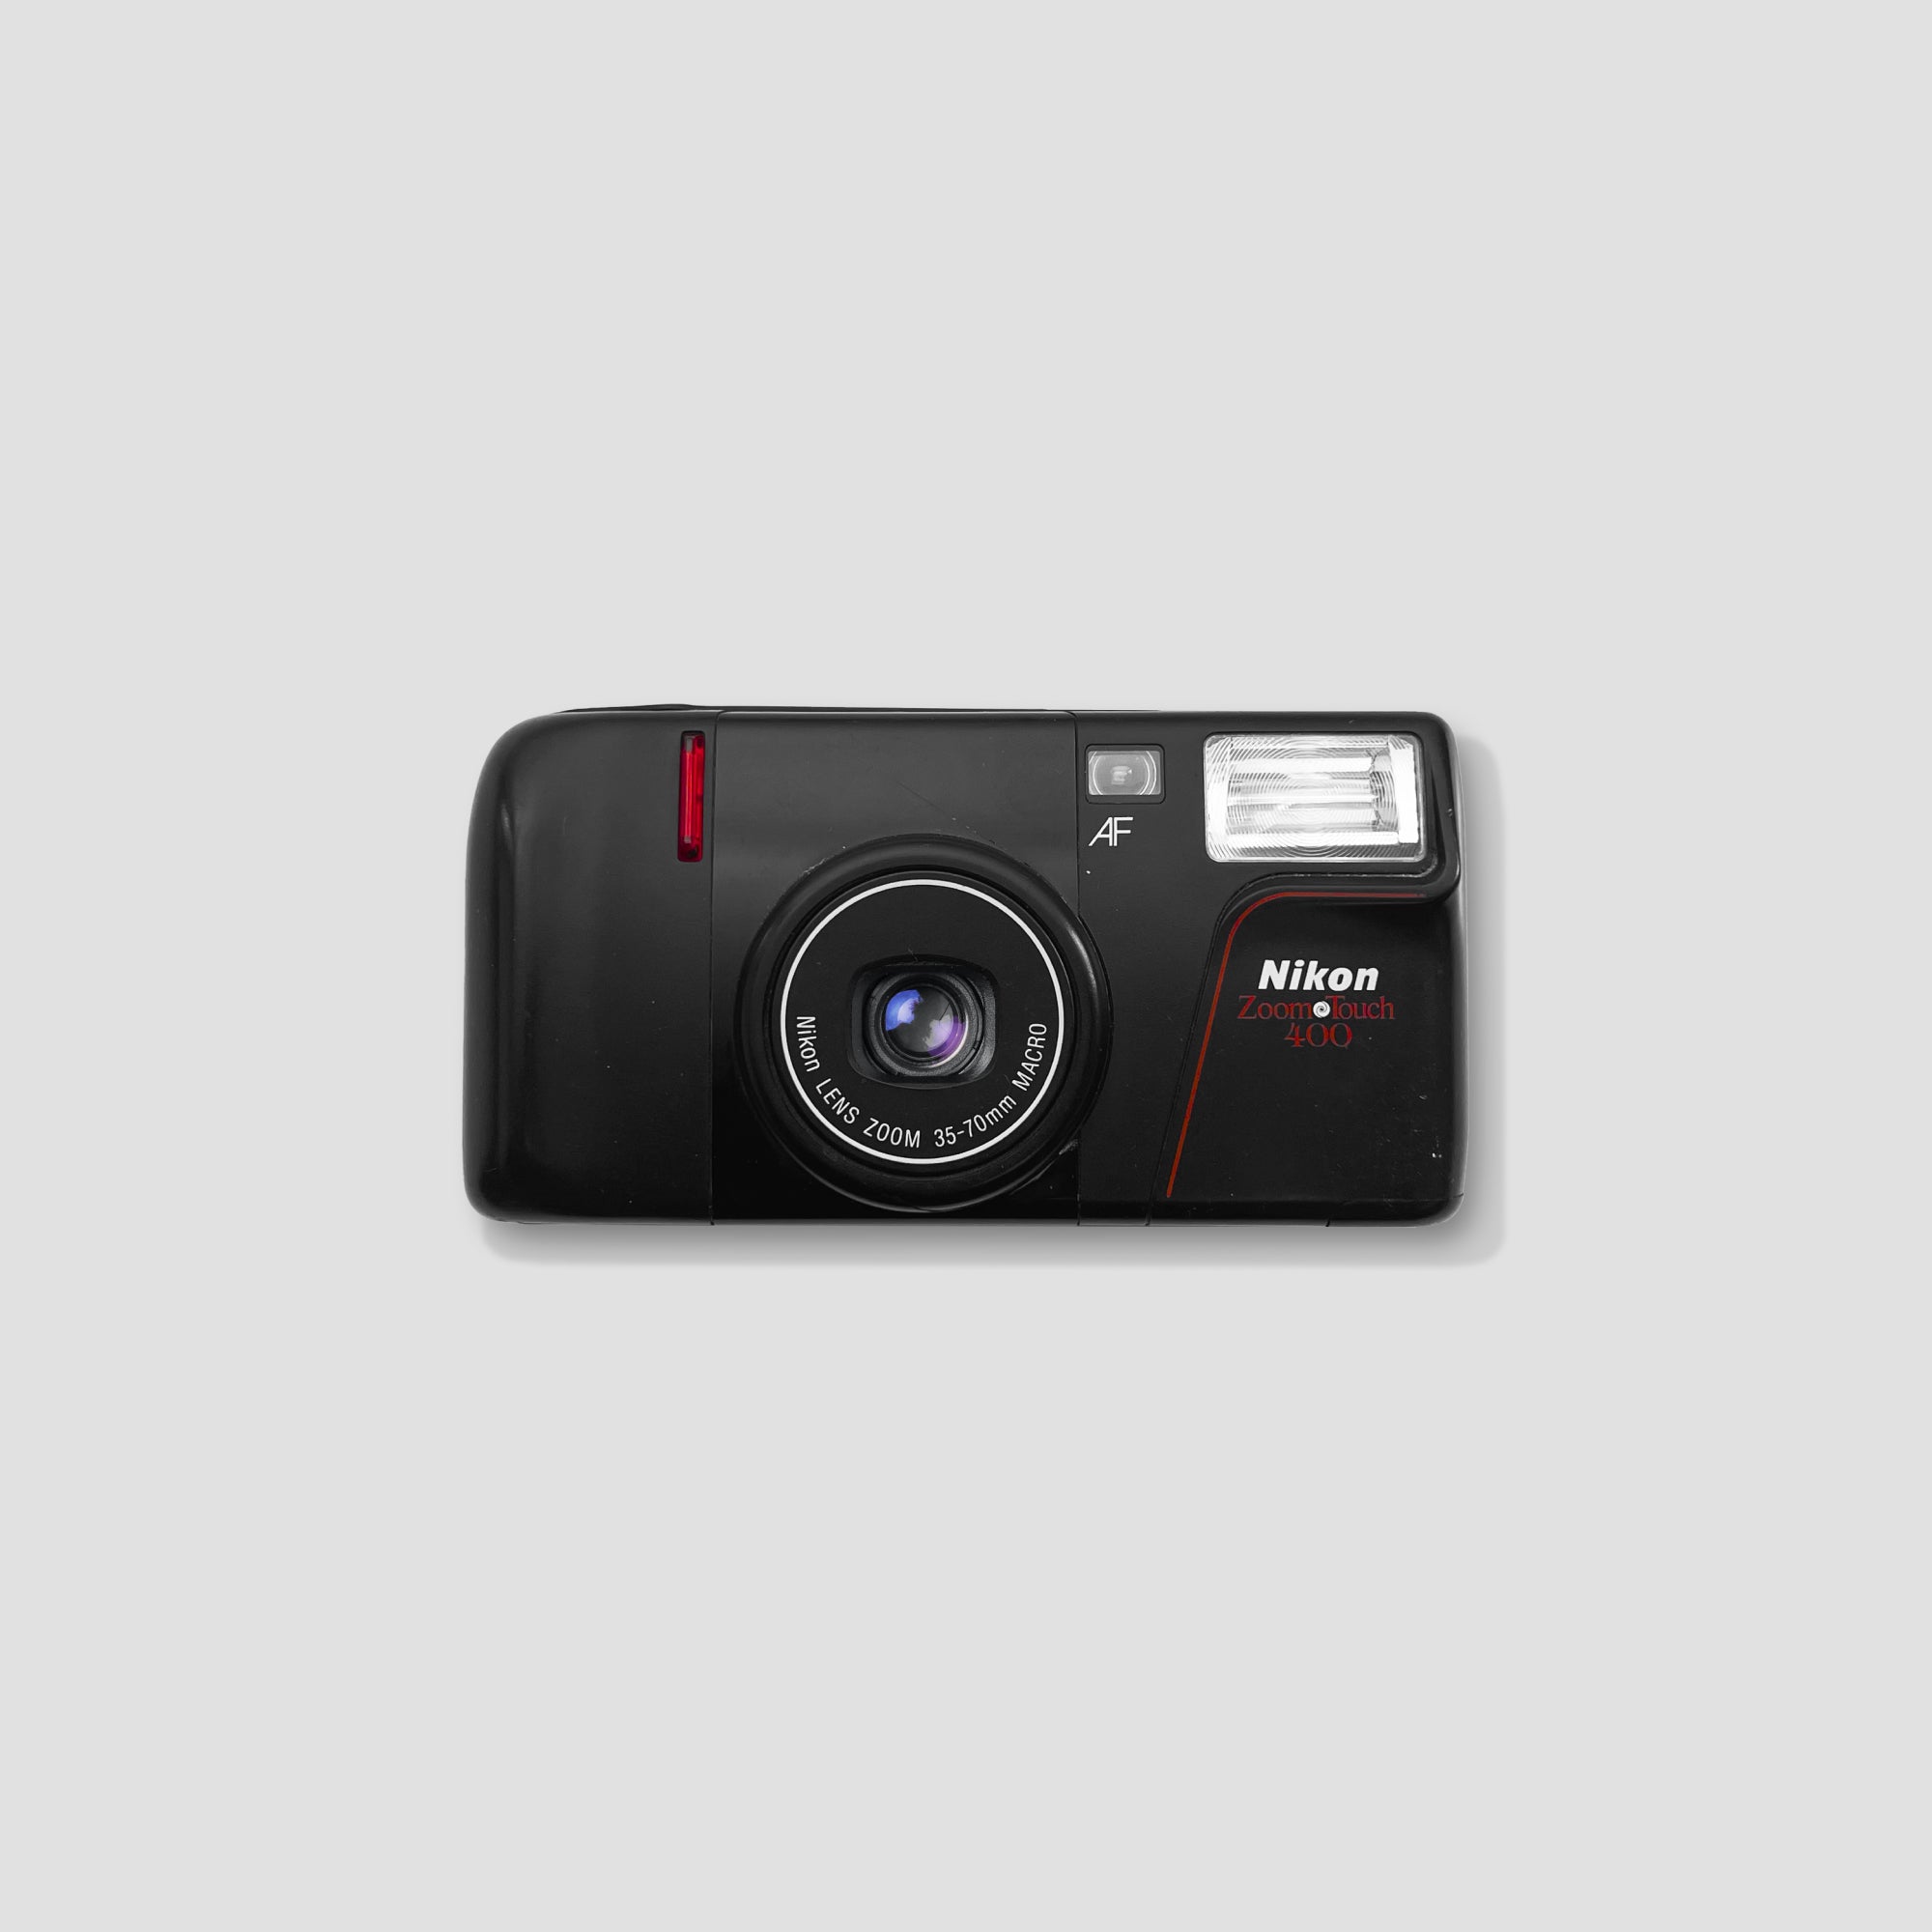 Nikon Zoom Touch 400